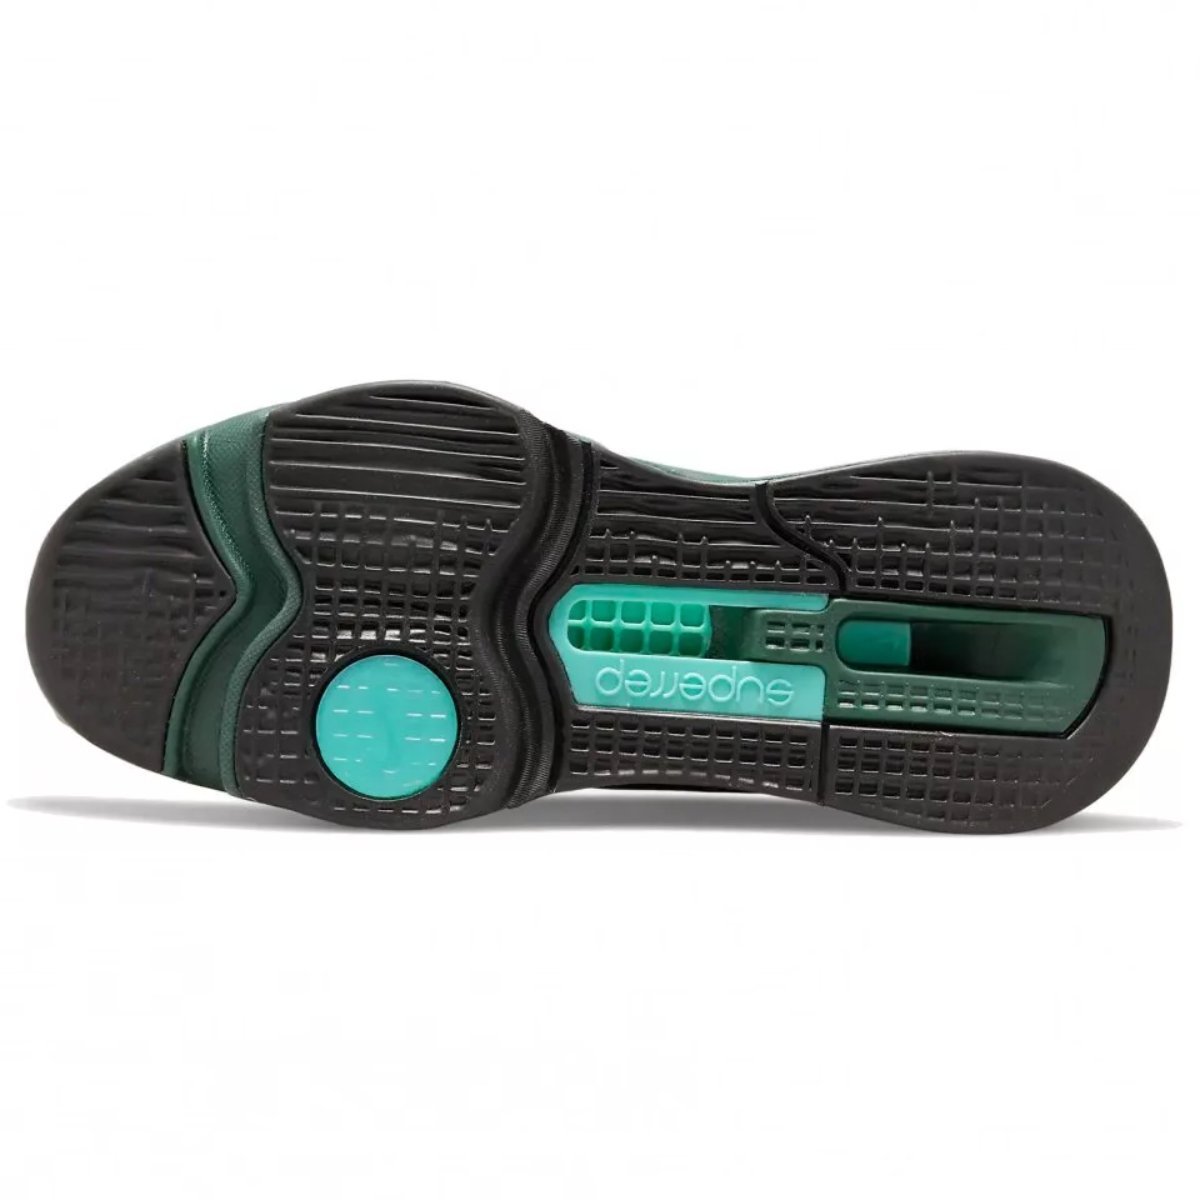 Topánky Nike Air Zoom Superrep 3 M - green